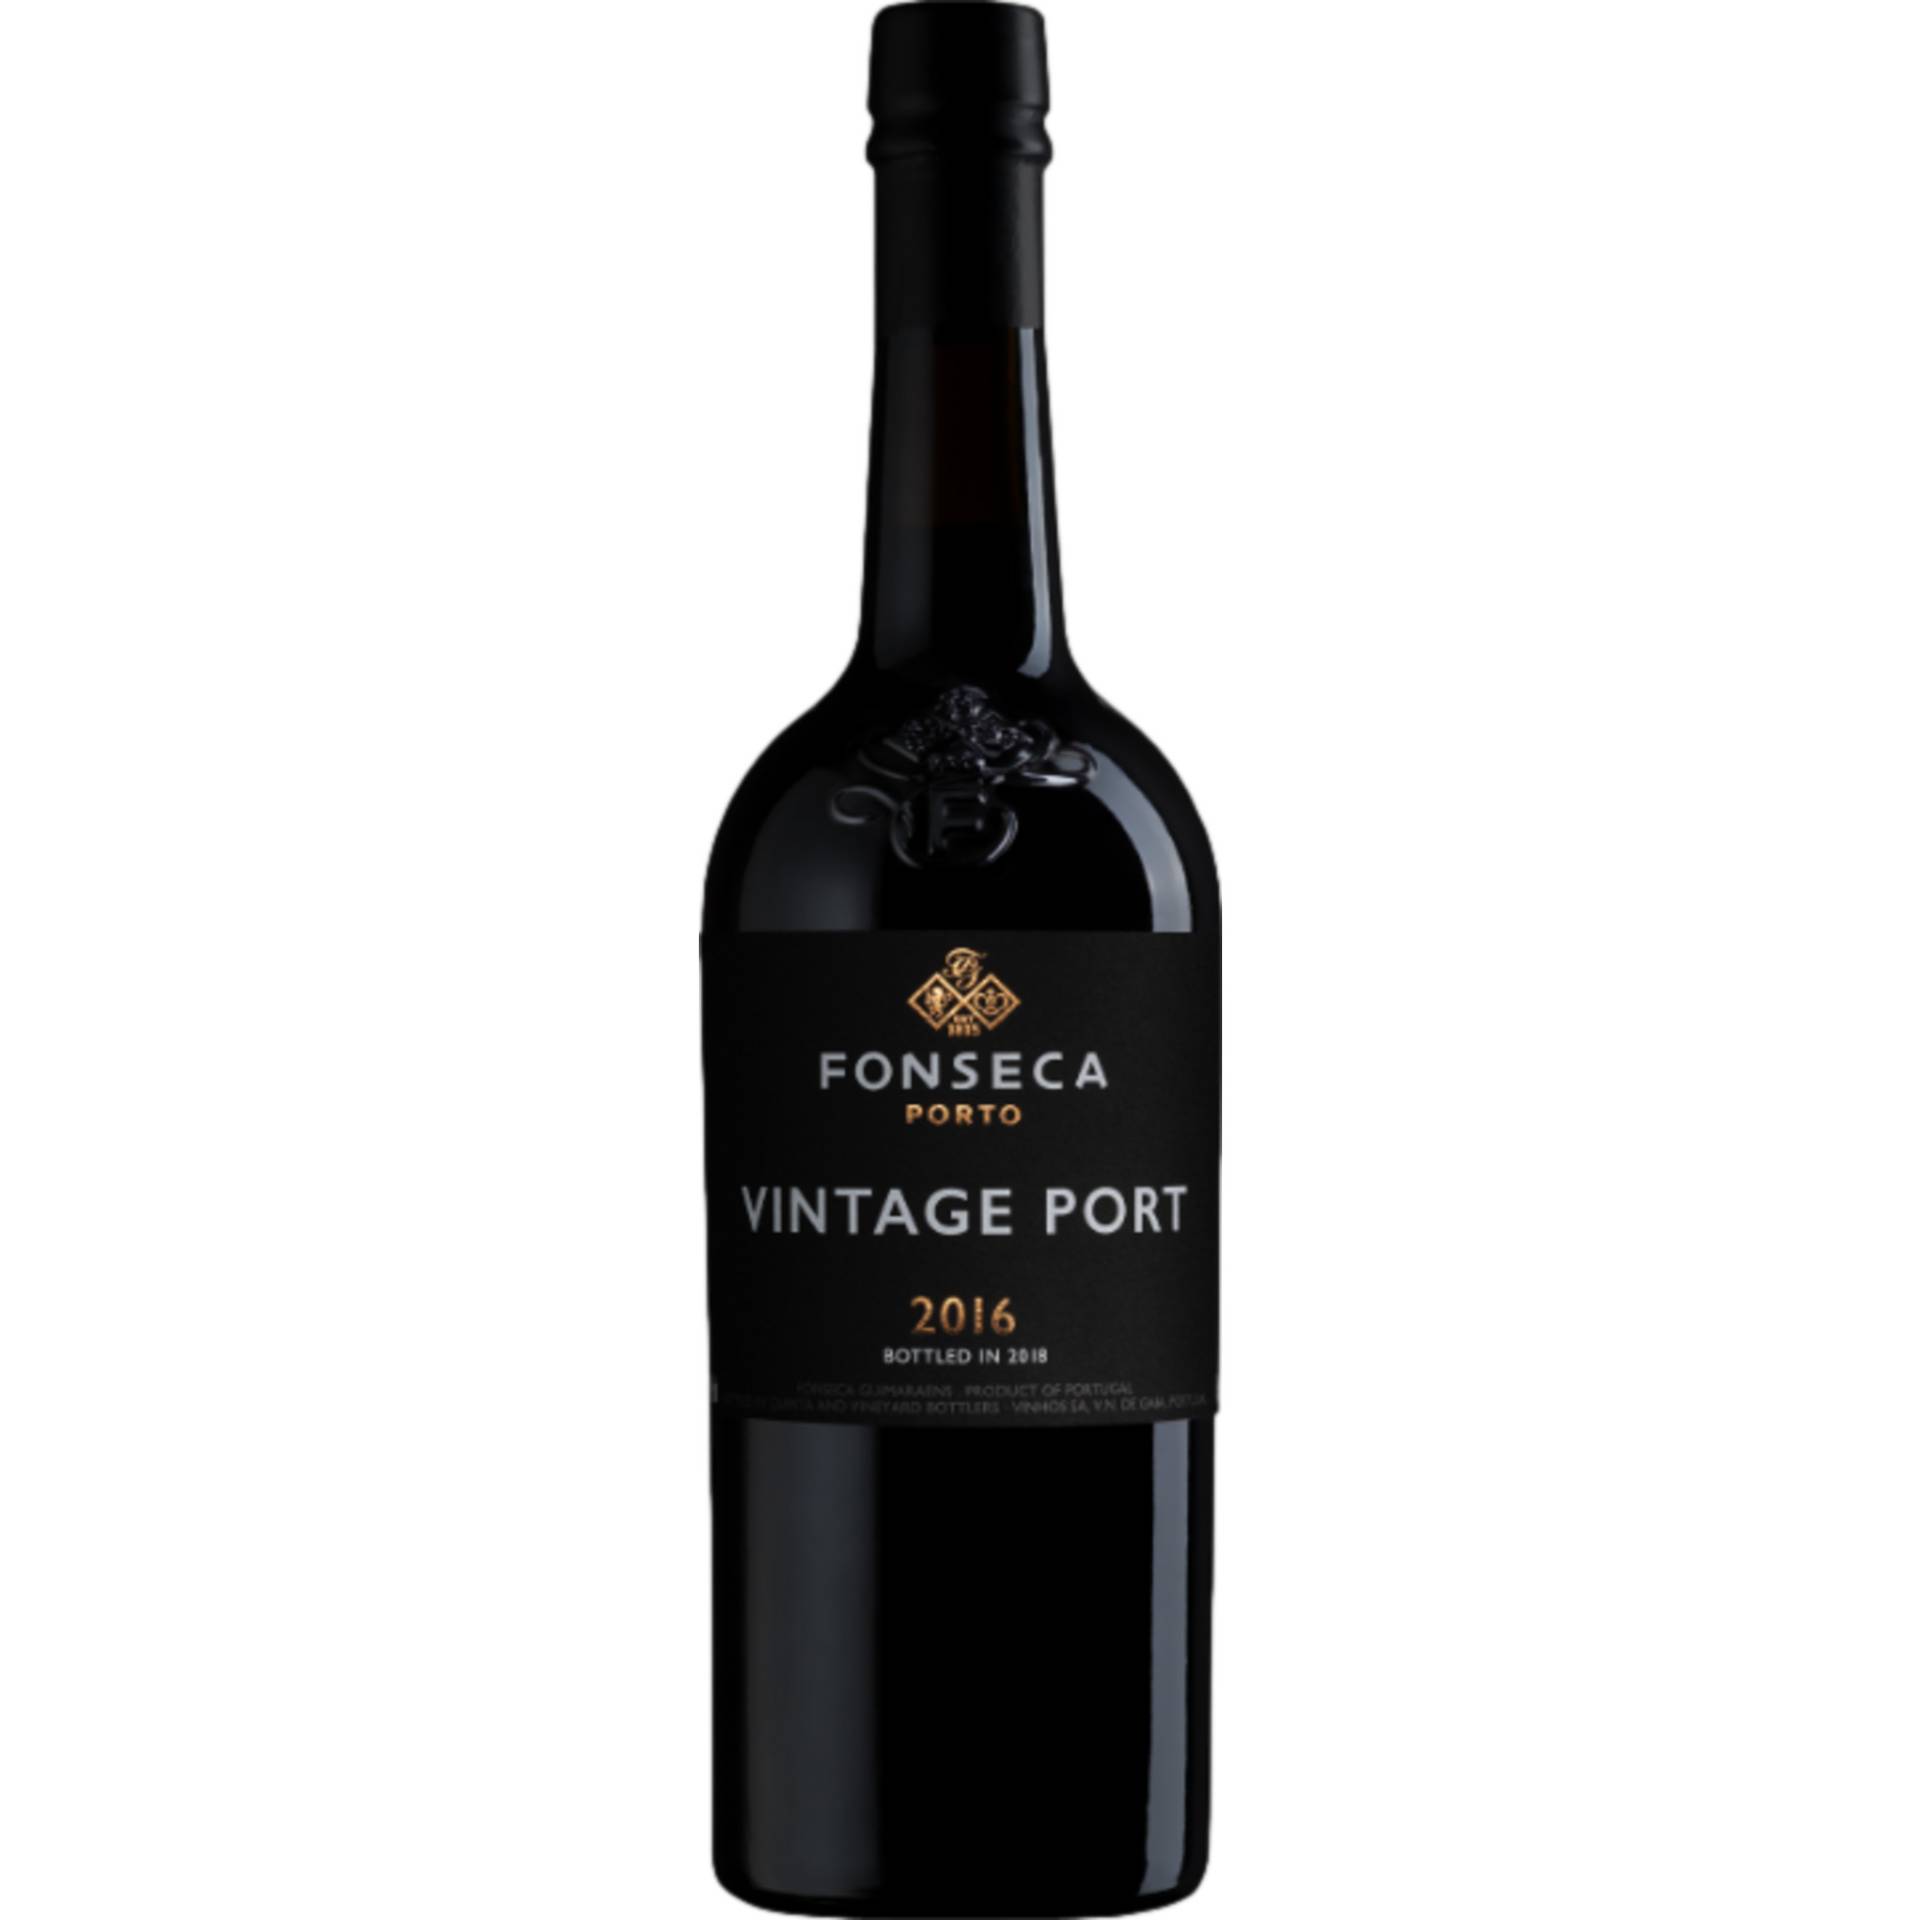 Fonseca Vintage Port, Vinho do Porto DOC, 0,75 L, 20% Vol., Douro, 2016, Spirituosen von Quinta and Vineyard Bottlers Vinhos SA,Rua Do Choupelo, 250, 4400-088, V. N. Gaia